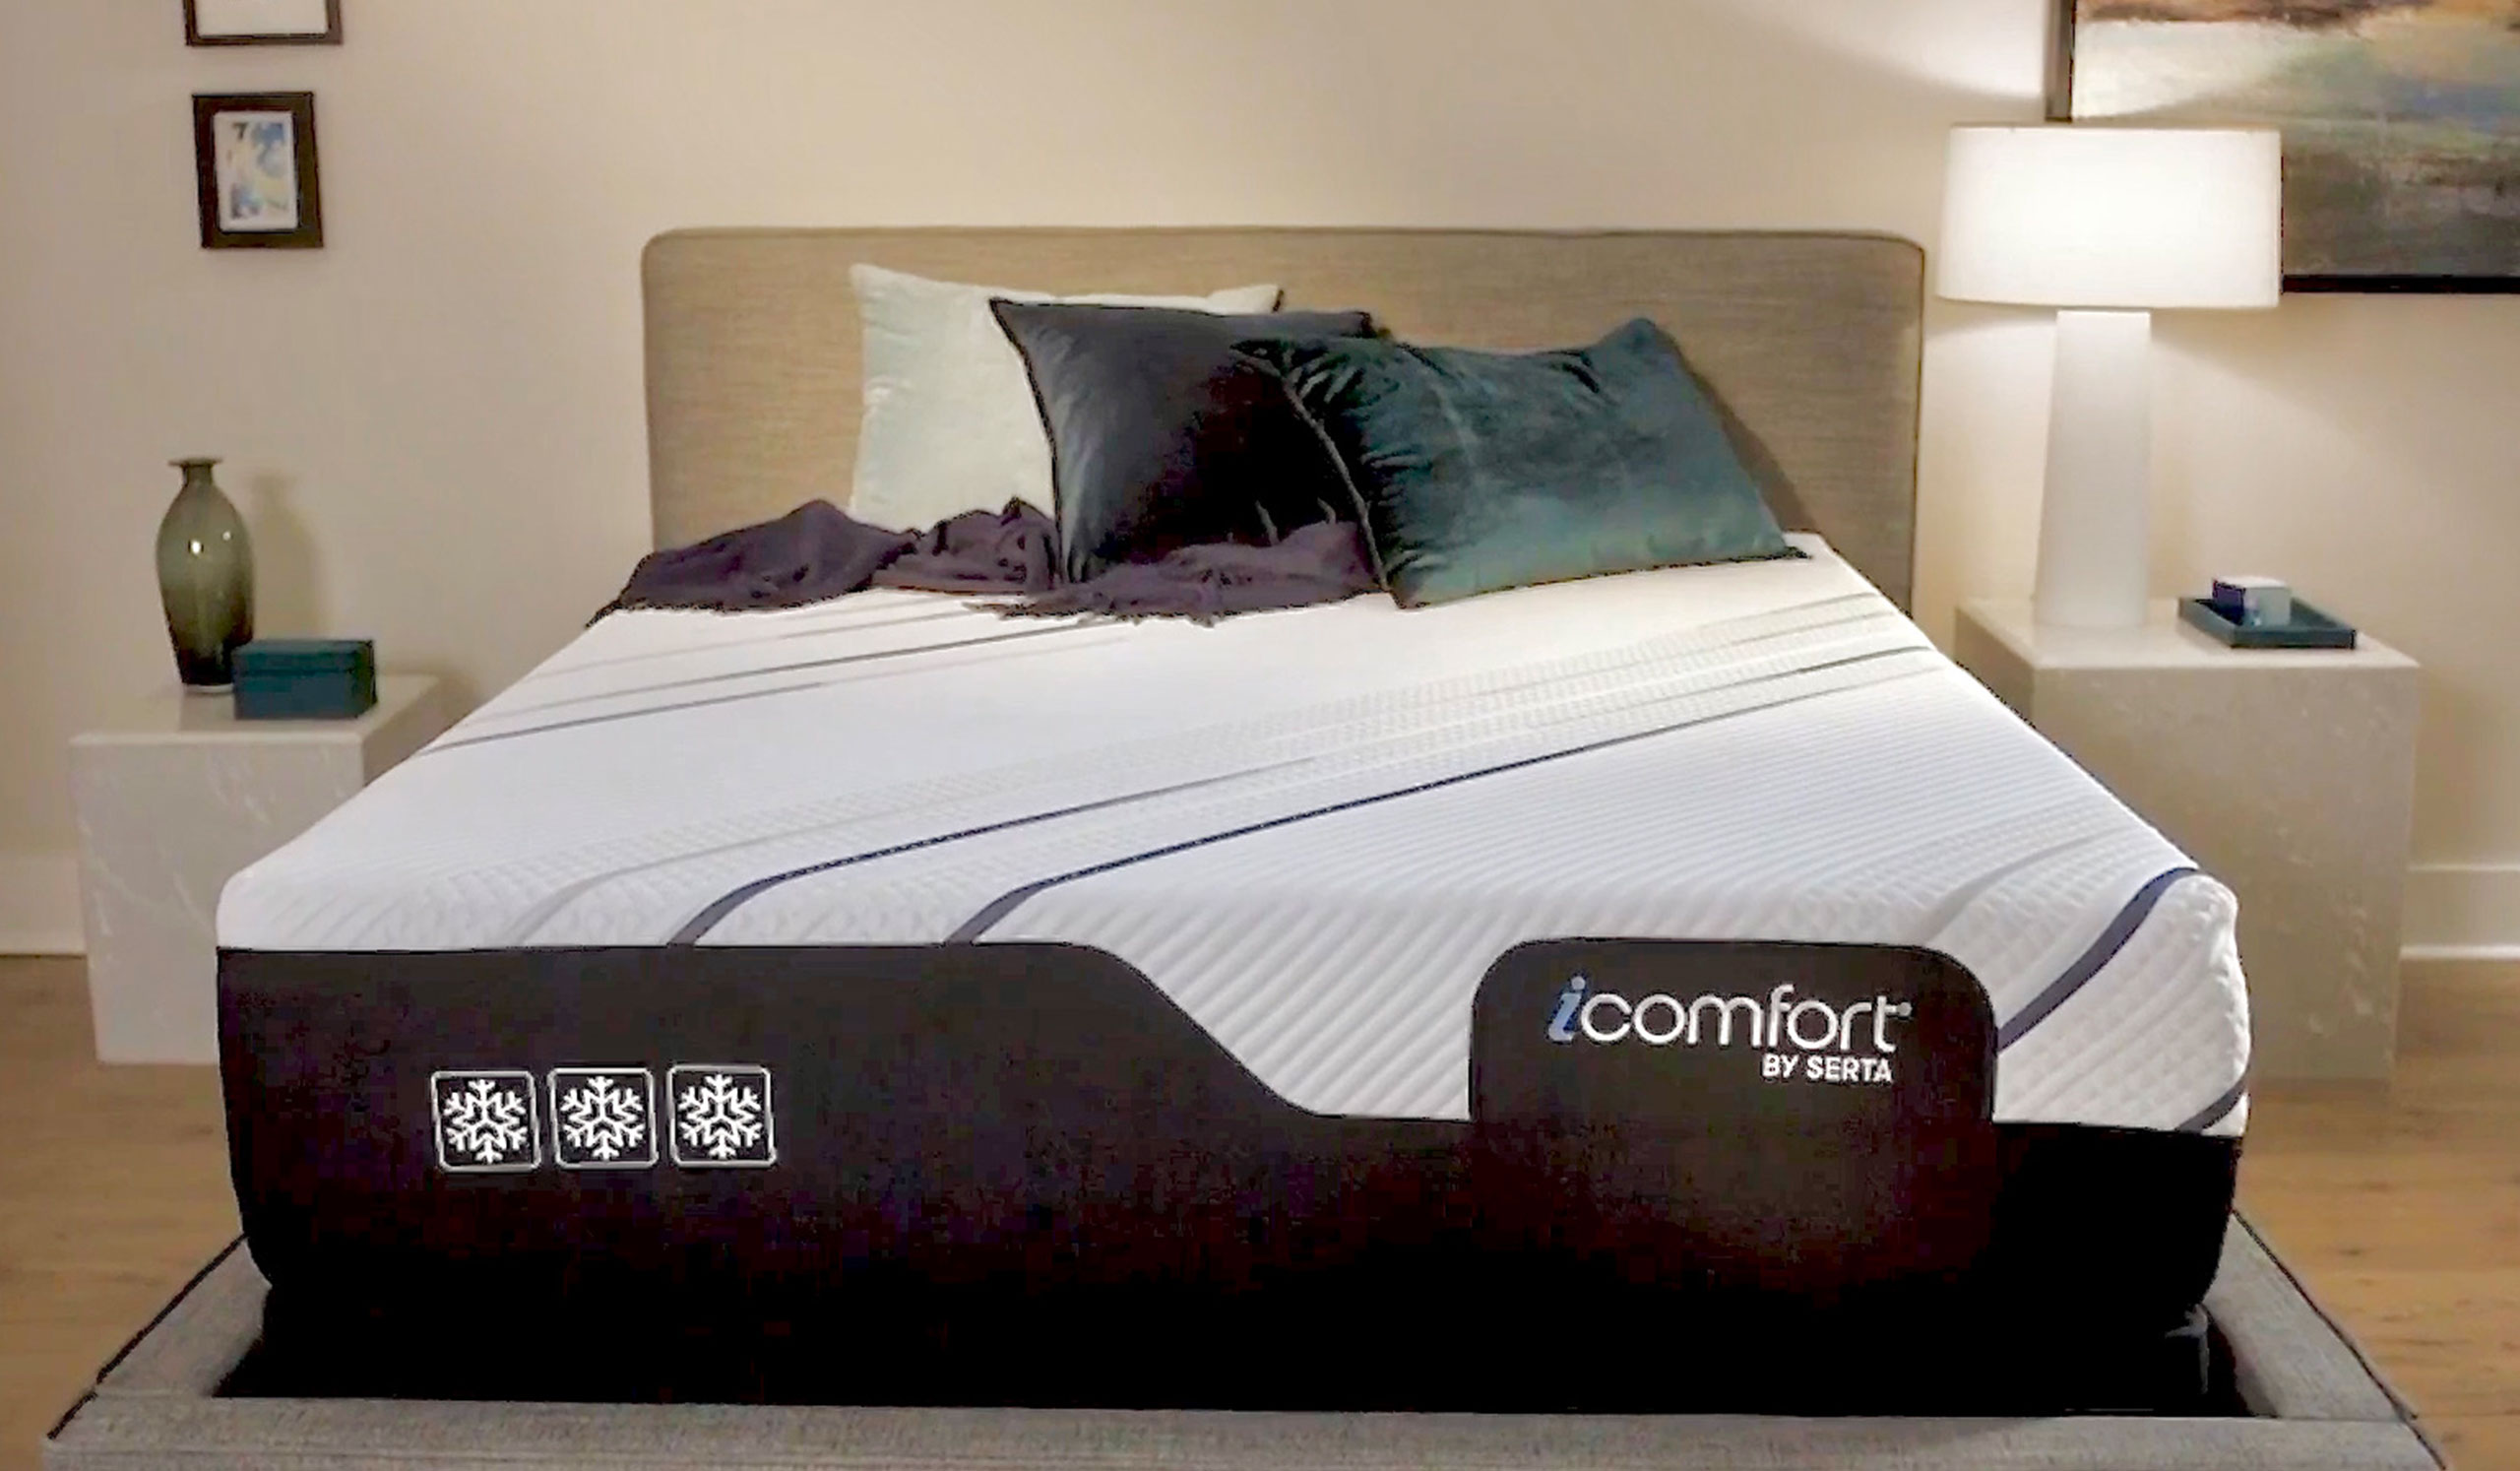 serta icomfort xls200 mattress pad